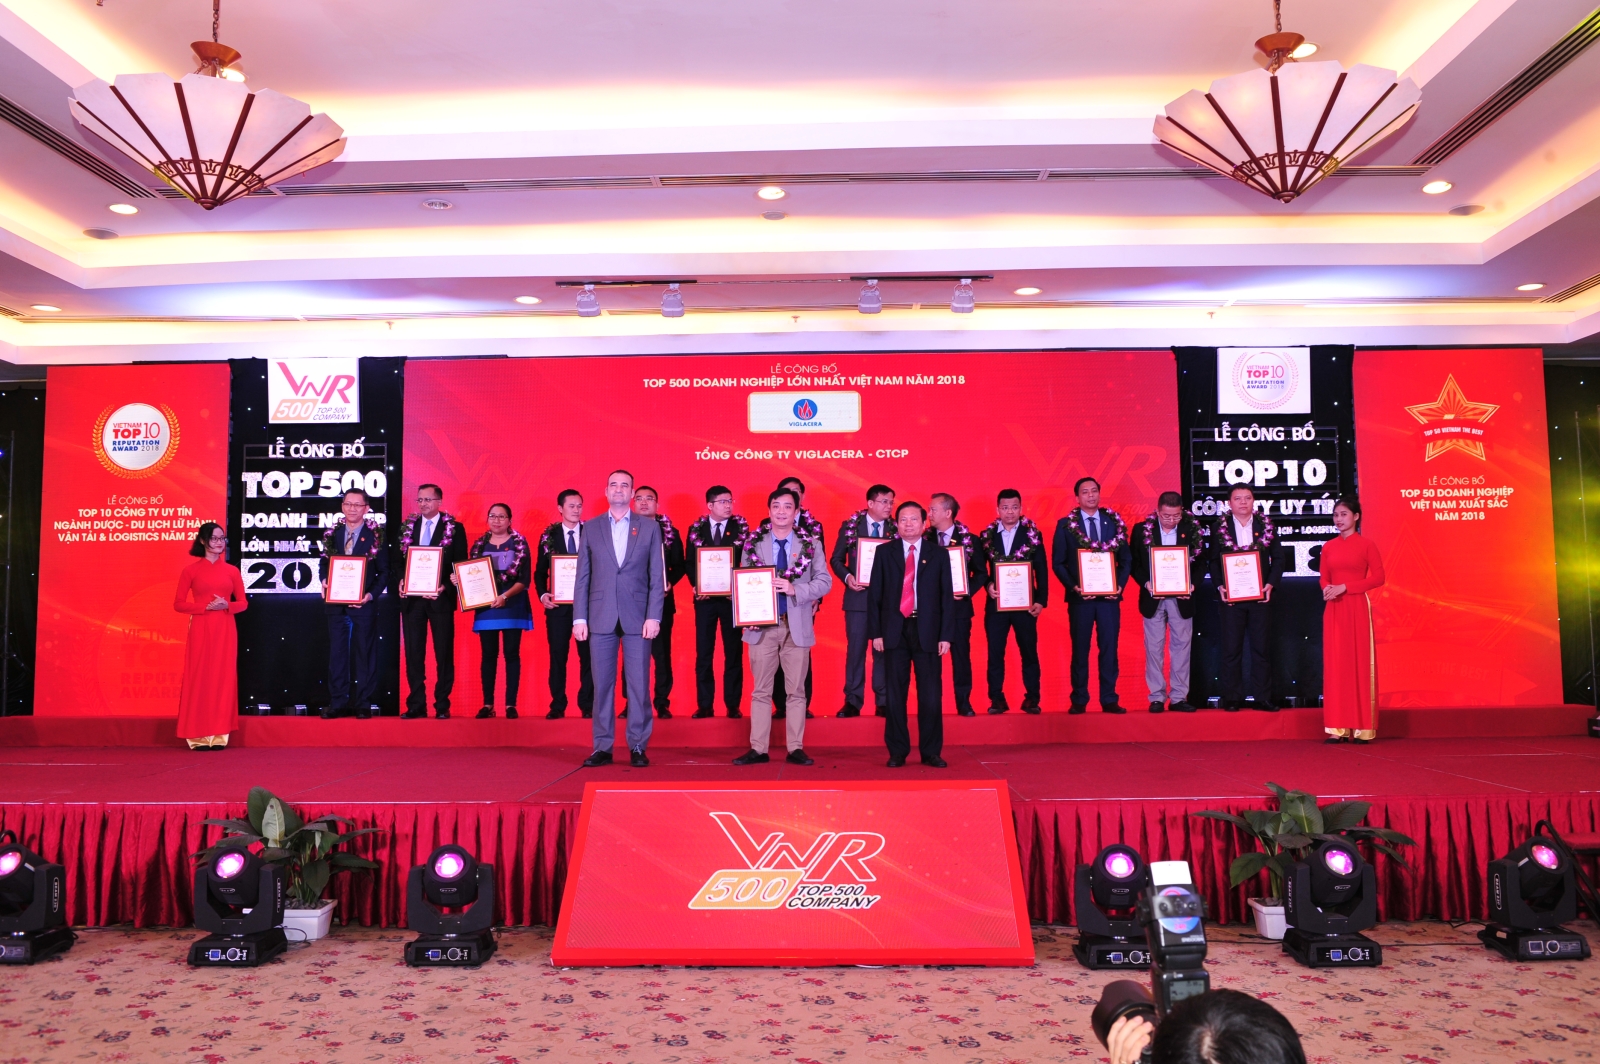 VNR500: Tổng công ty Viglacera – CTCP vươn lên vị trí dẫn đầu Top 500 doanh nghiệp lớn nhất Việt Nam trong ngành sản xuất, kinh doanh vật liệu xây dựng